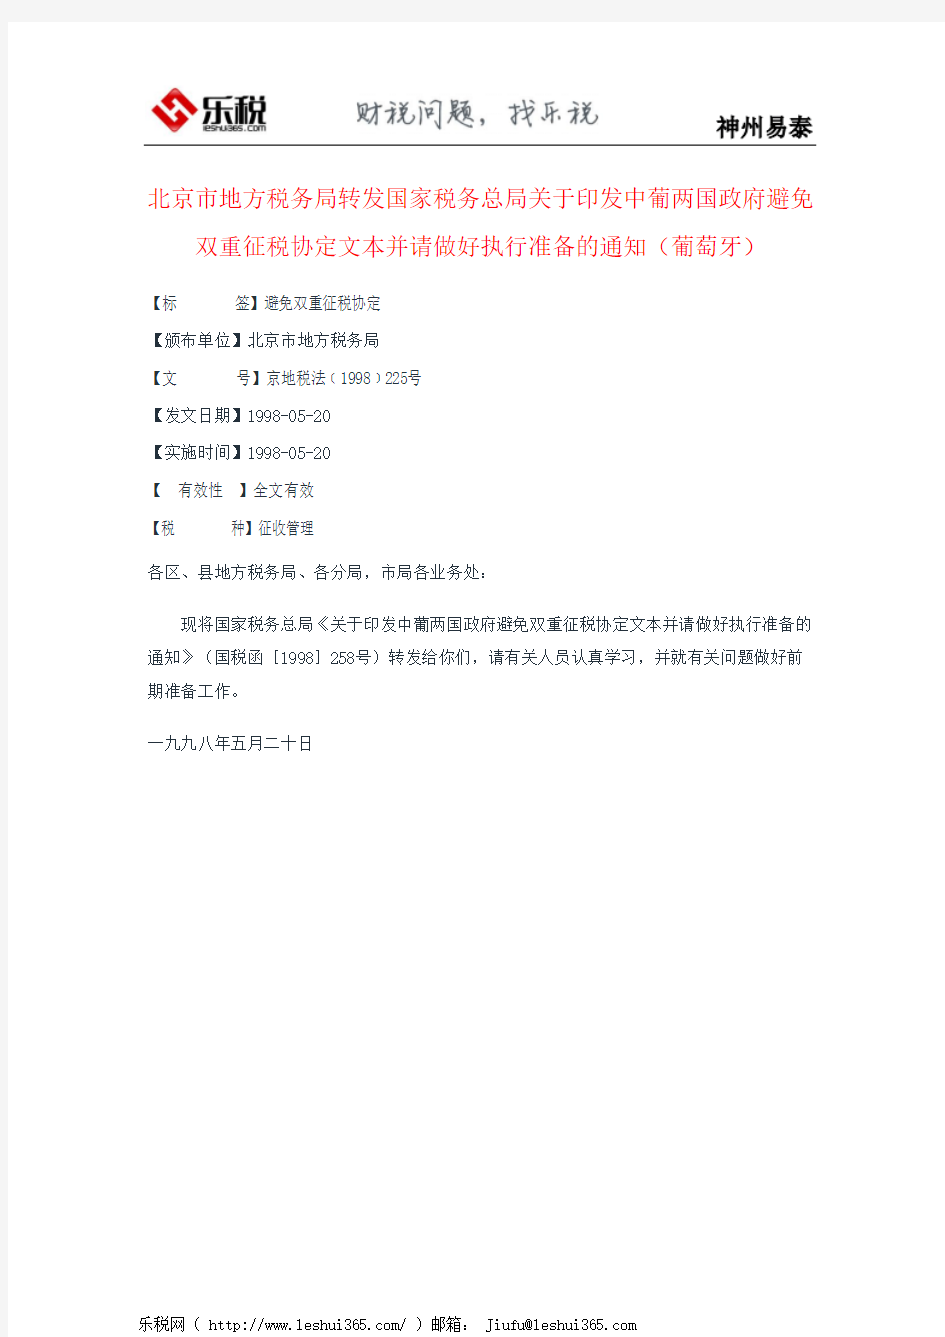 北京市地方税务局转发国家税务总局关于印发中葡两国政府避免双重